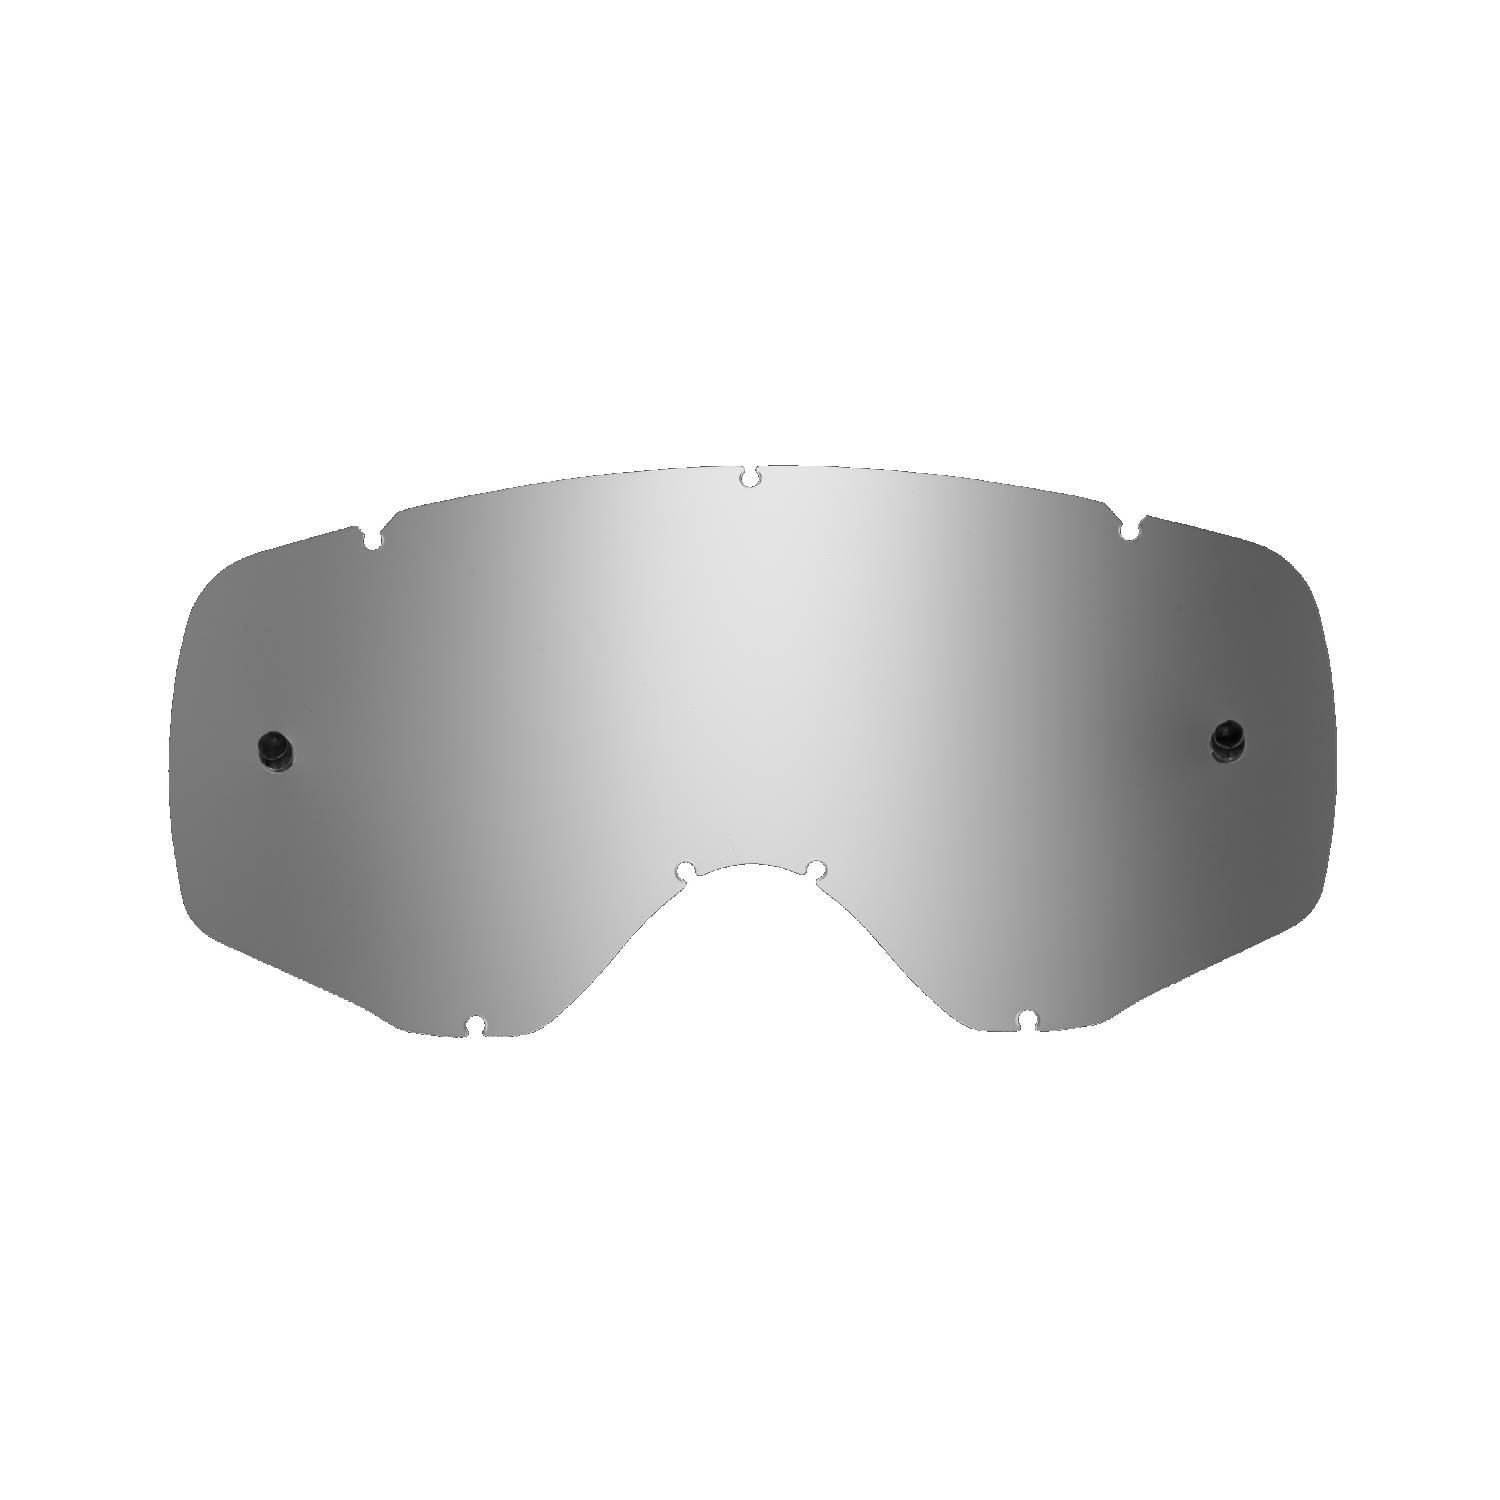 Lente di ricambio argento specchiato compatibile per occhiale/maschera cross Ethen Zerosei GP/ Basic / Evolution/ Mud Mask